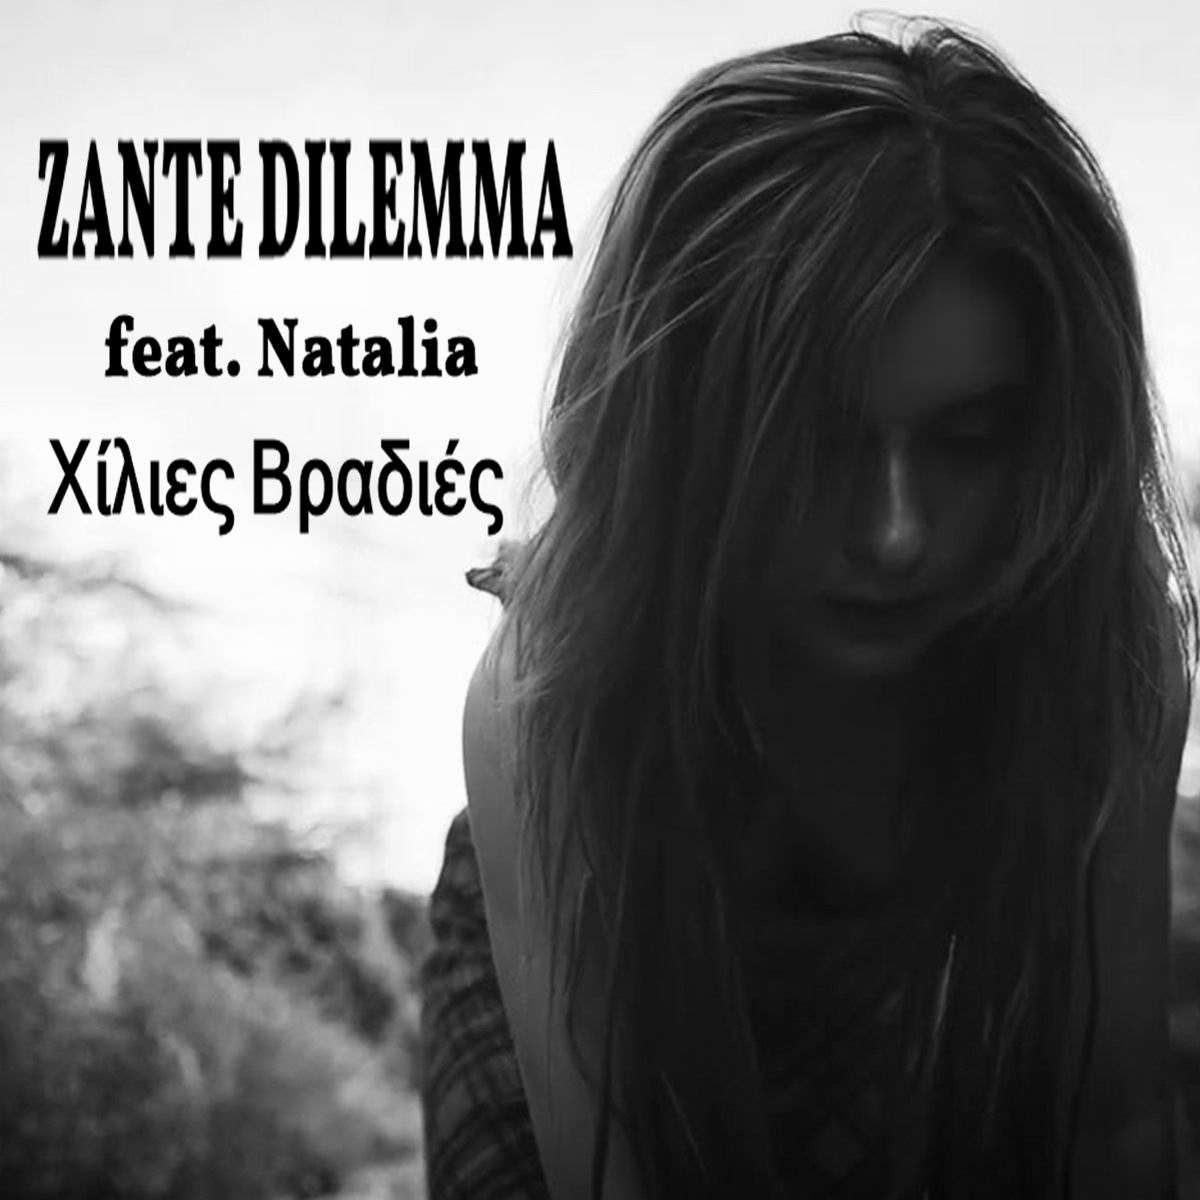 Η Zante Dilemma συναντούν την Τζένη Βάνου σε ένα τραγούδι ορόσημο που θα συζητηθεί!